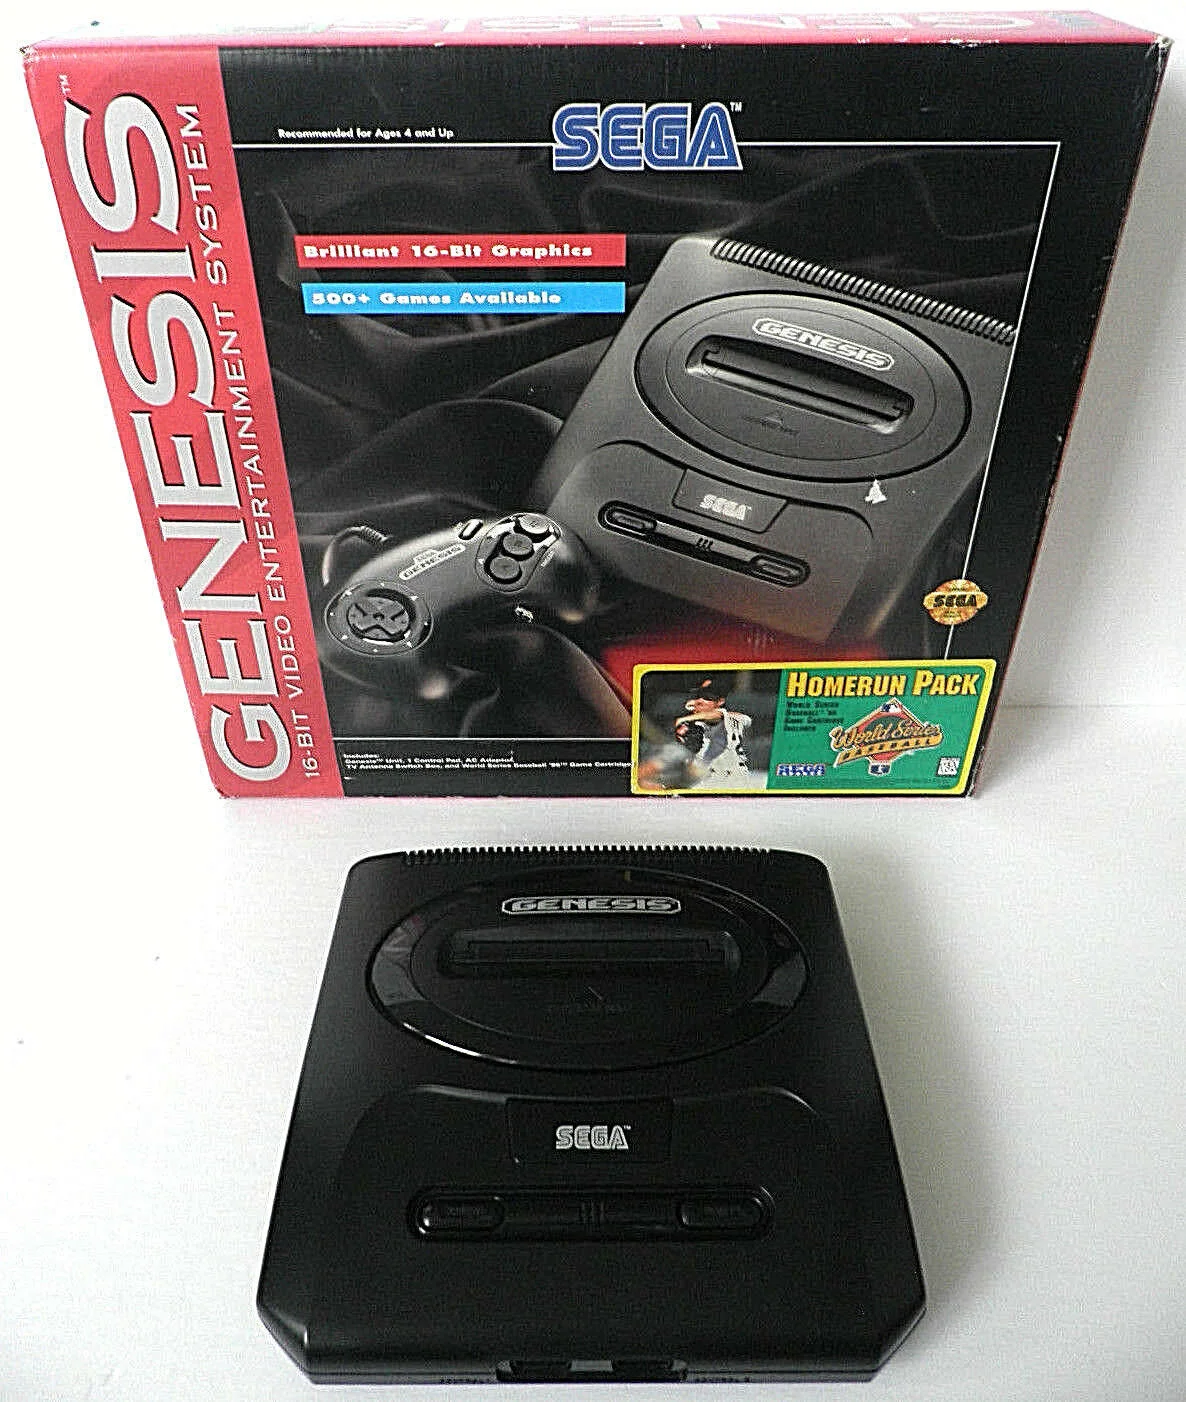  Sega Genesis Model 2 Homerun Pack